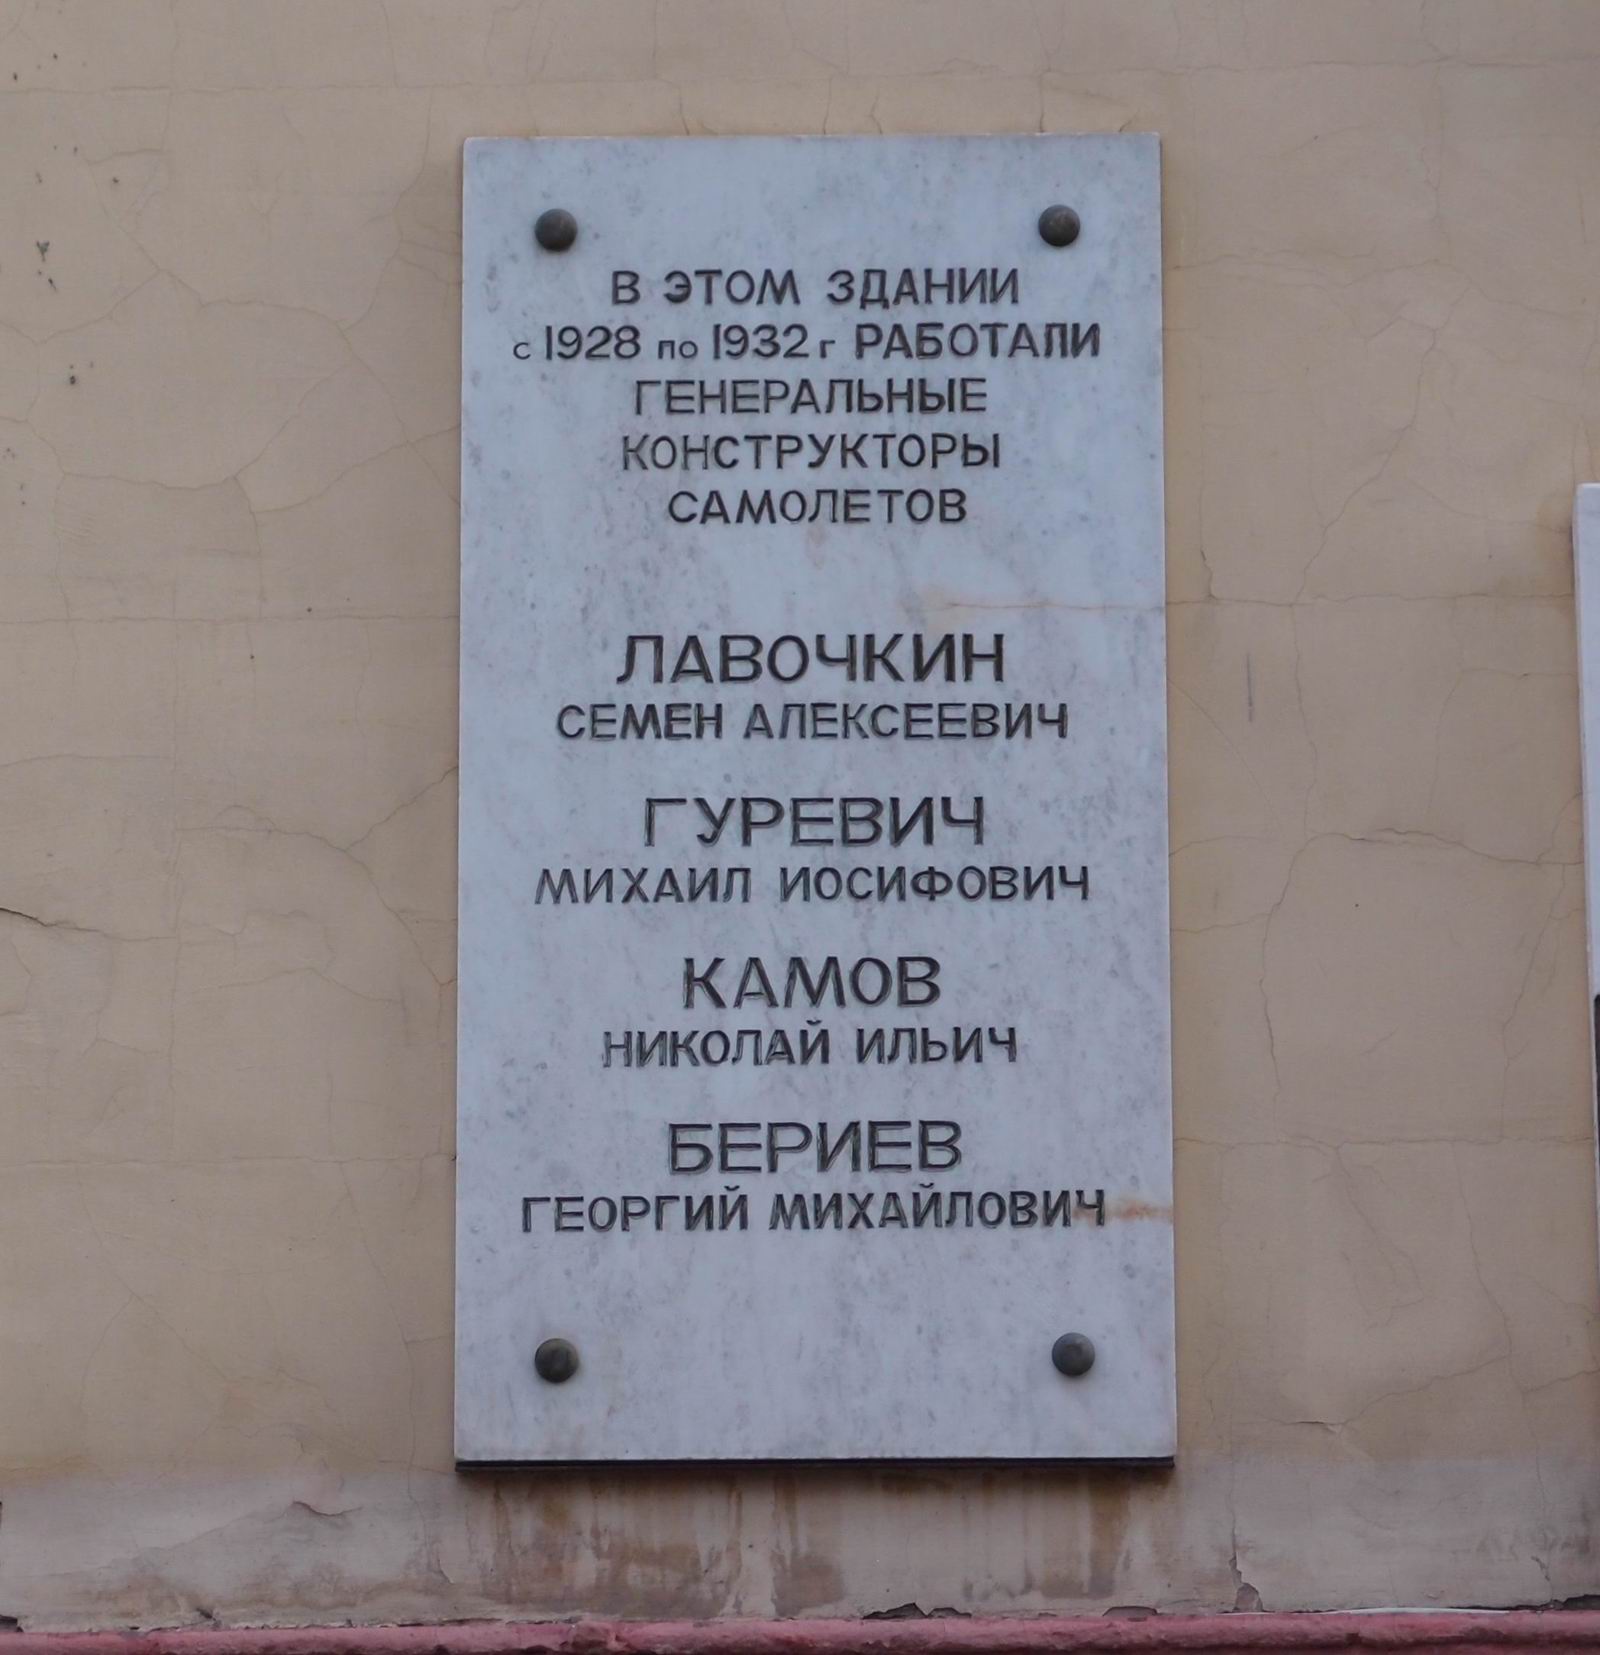 Мемориальная доска авиаконструкторам, в Столярном переулке, дом 3, корпус 1.